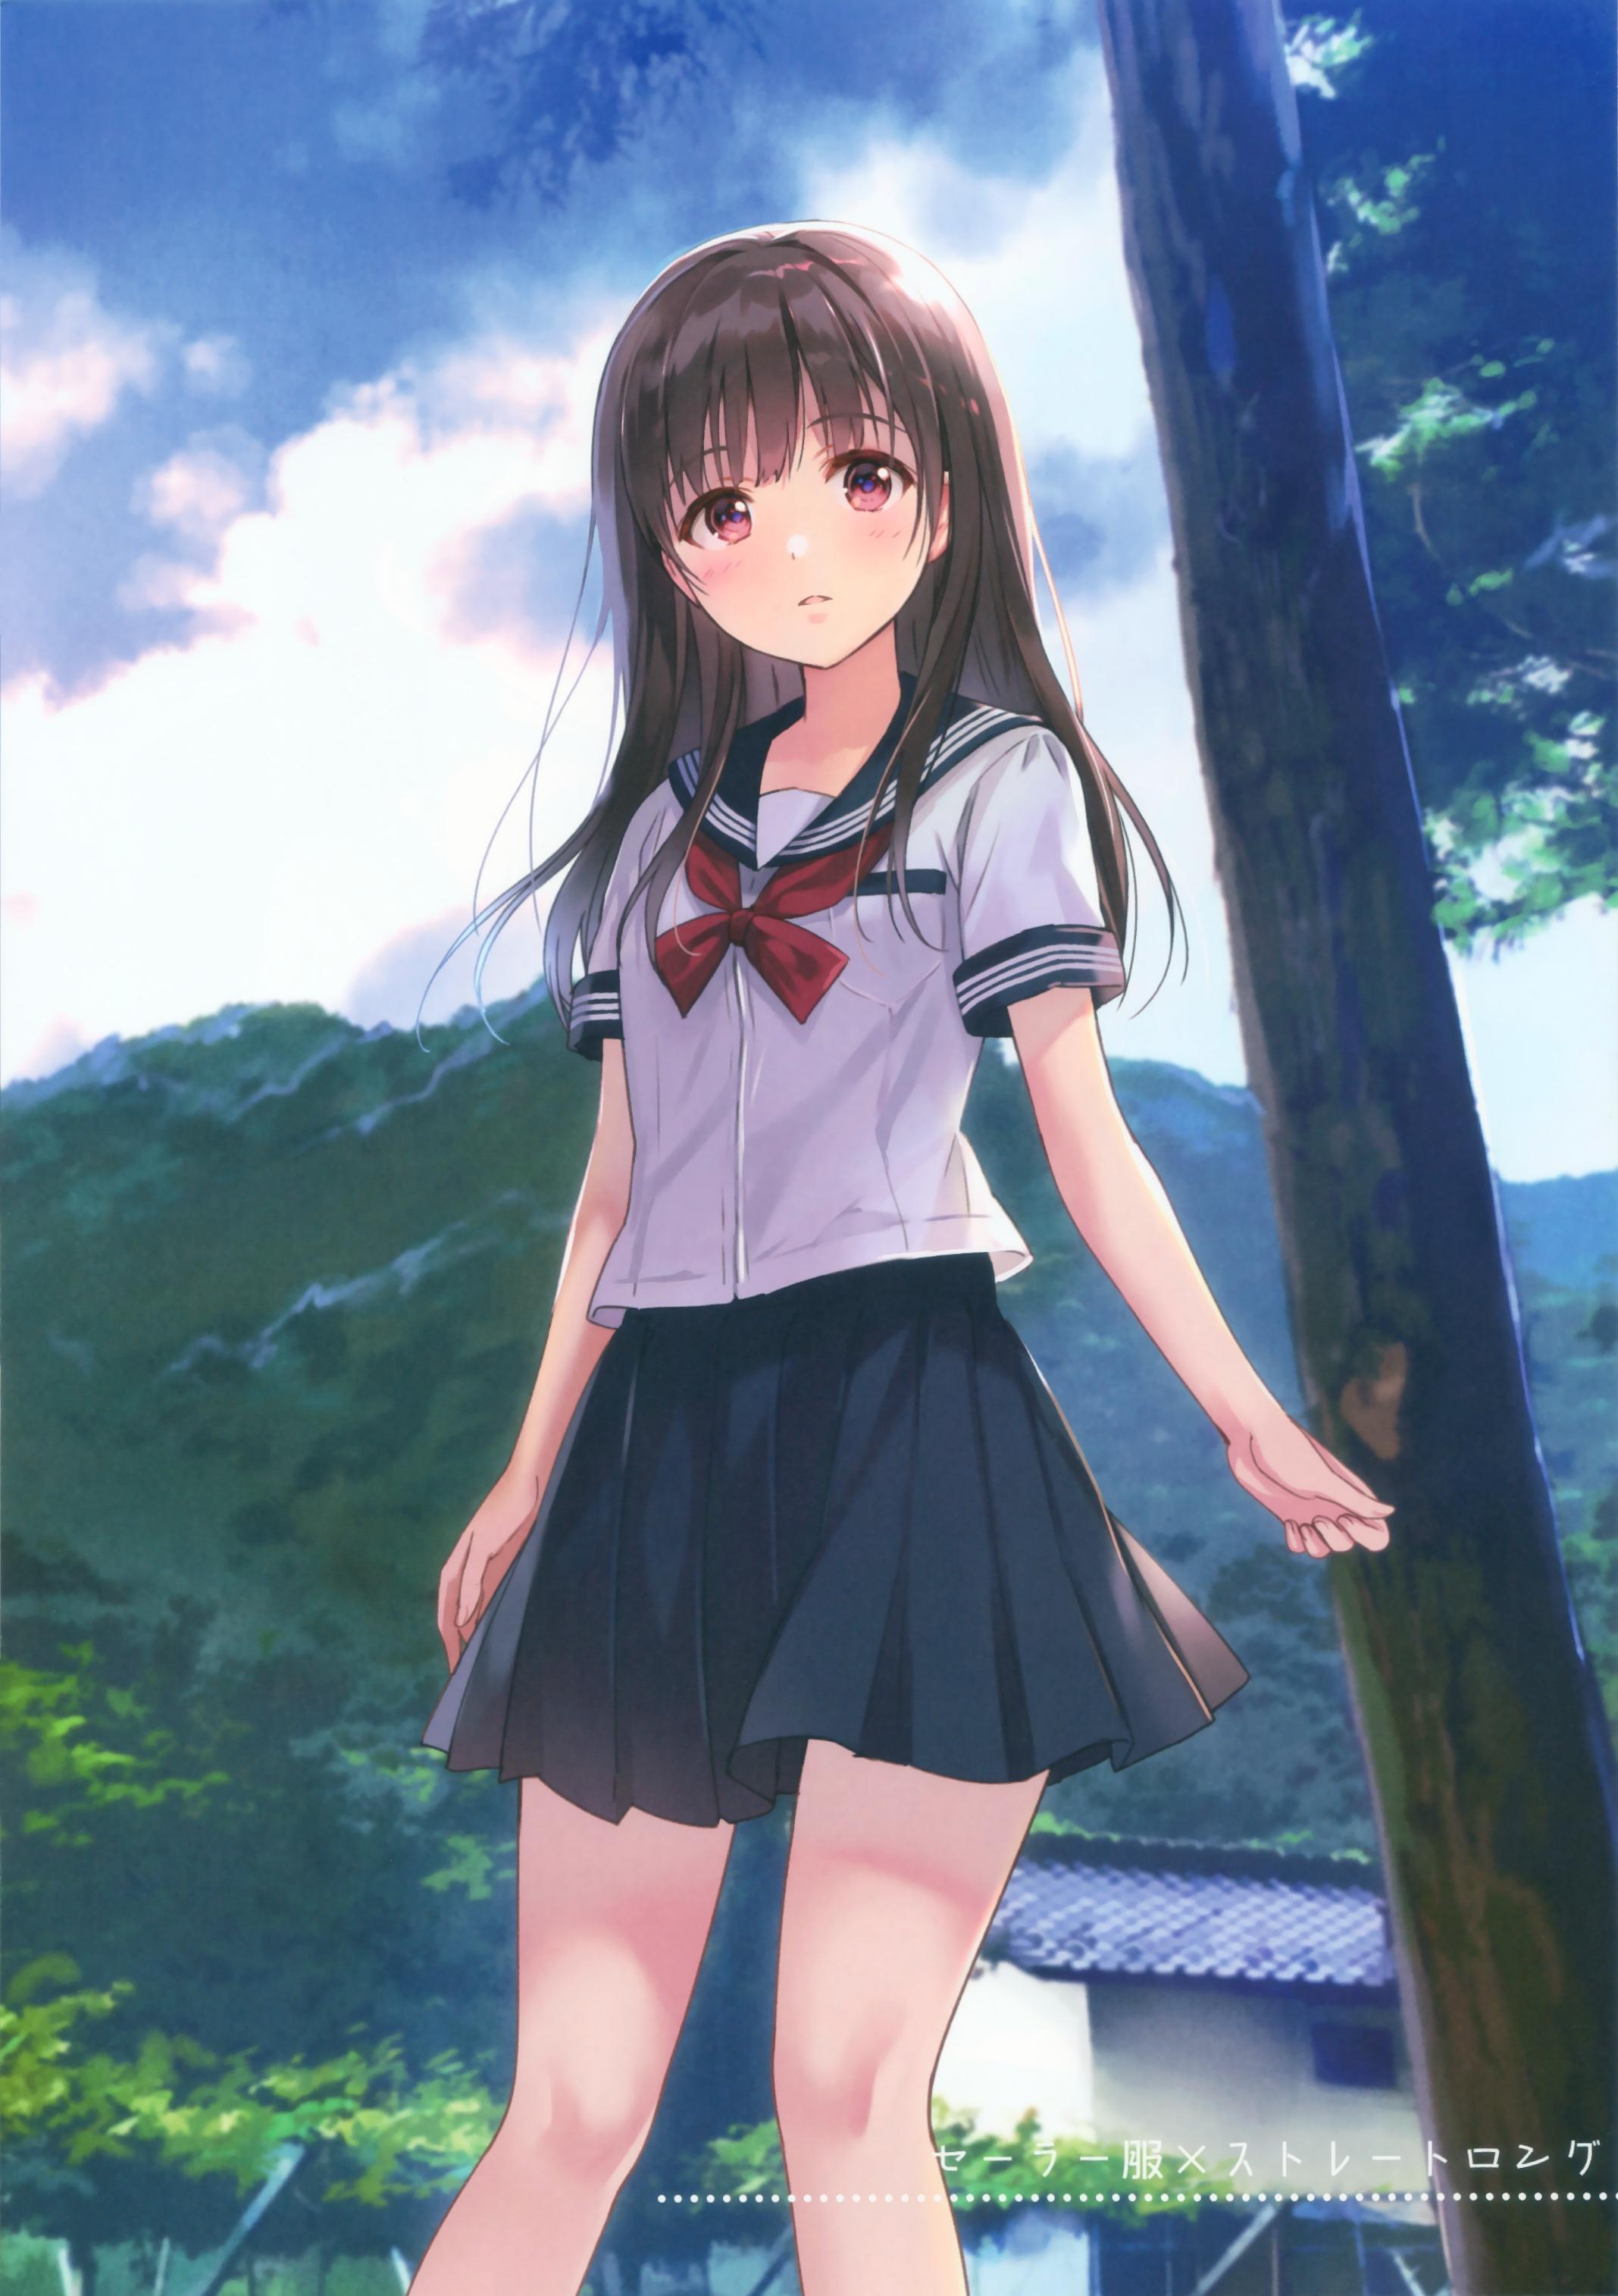 Anime Girl  High School wallpaper  1440x900  1195659  WallpaperUP